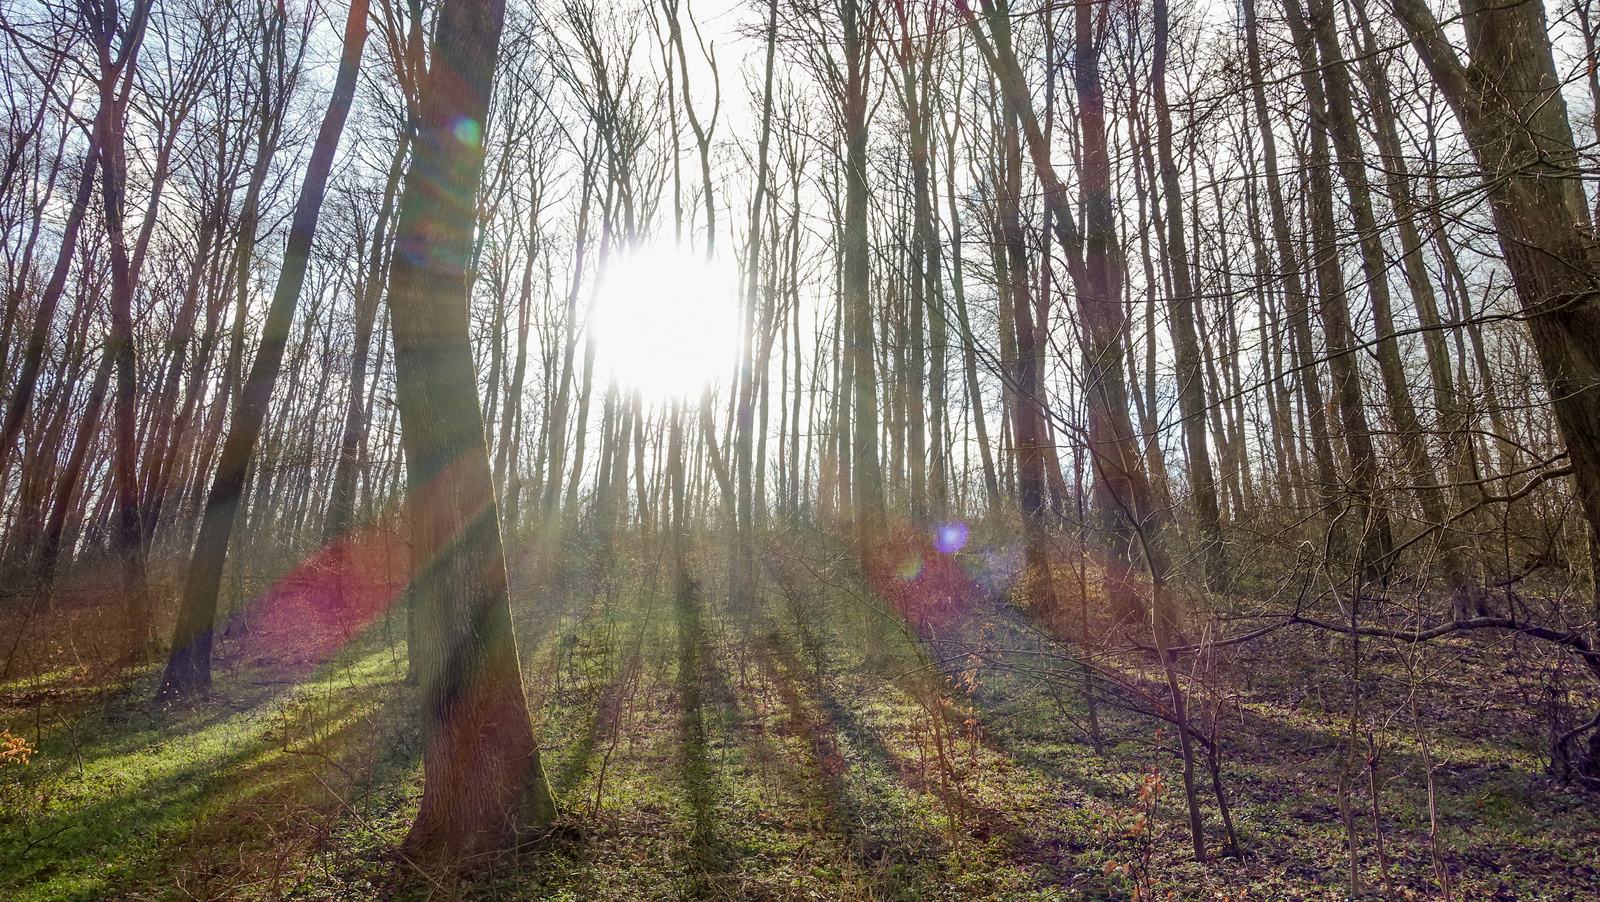 Reggeli napfény az erdőben - Cziráki Balázs, 2015, a fény és árn